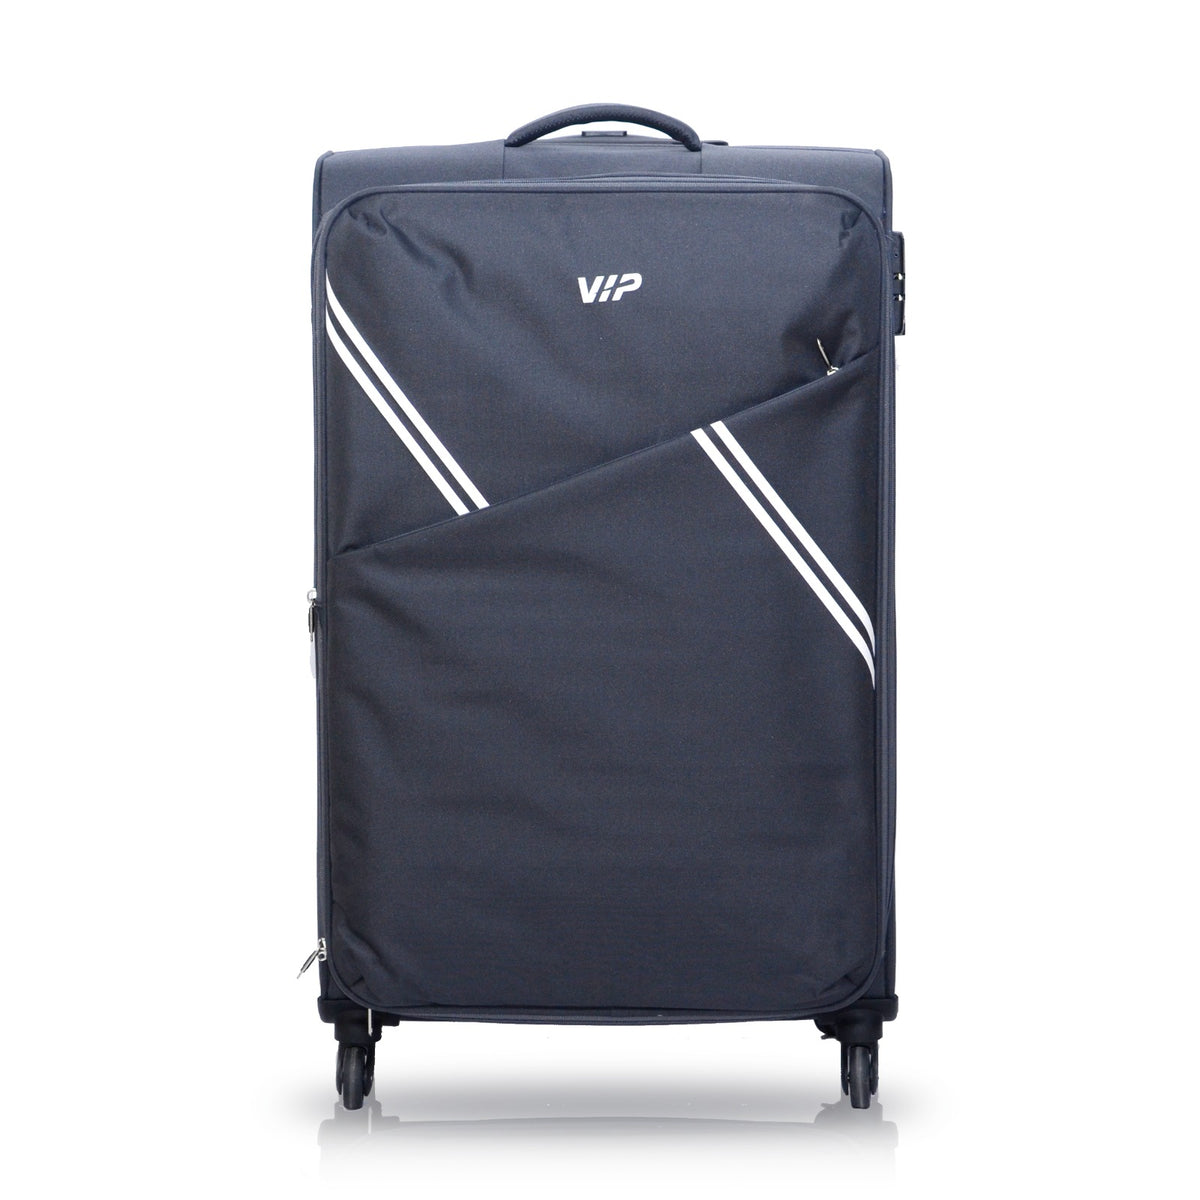 VIP Verona 59cm,4 Wheel Cabin Luggage Trolley, Grey, VERONA59GR